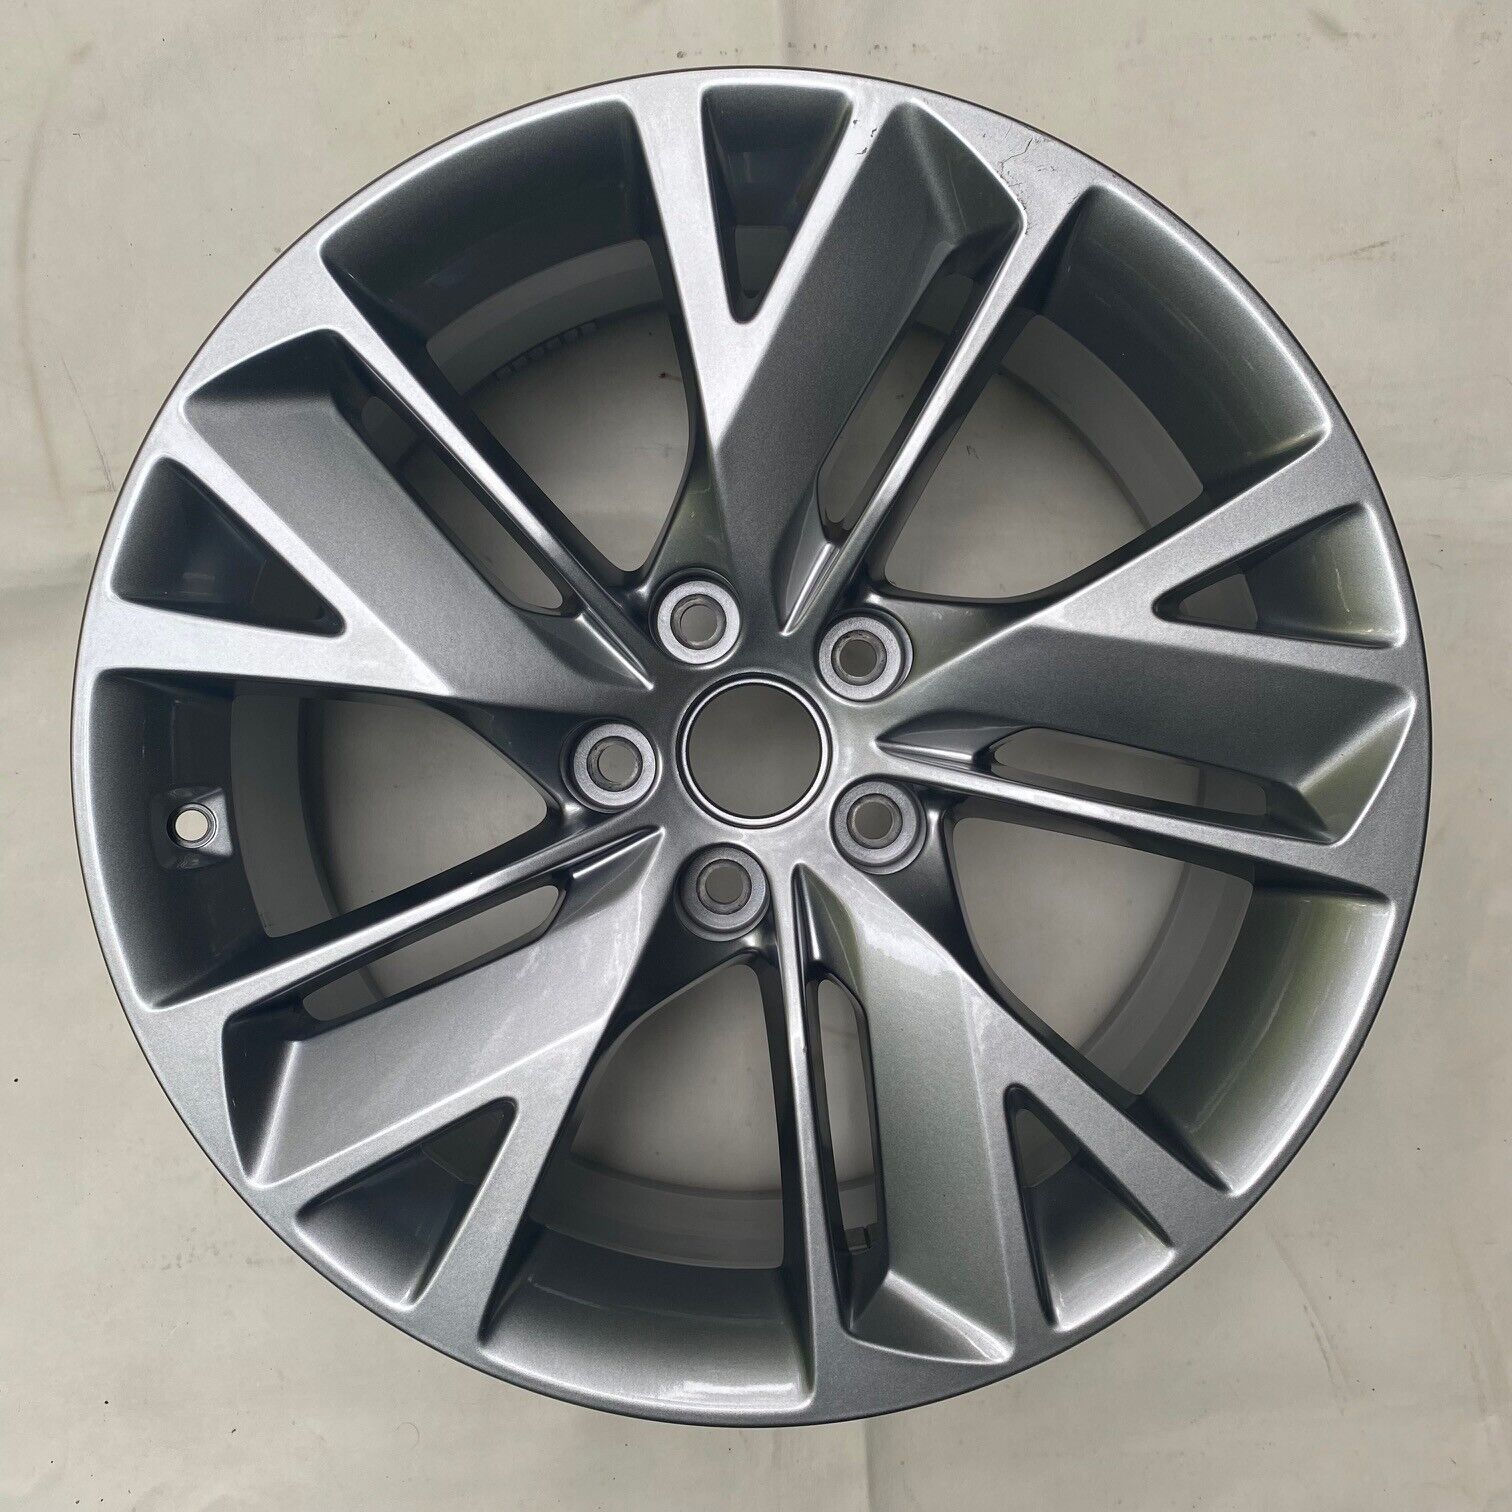 2022-2023 Genuine Hyundai Genesis GV70 Wheel/Rim Silver Painted #52910AR000